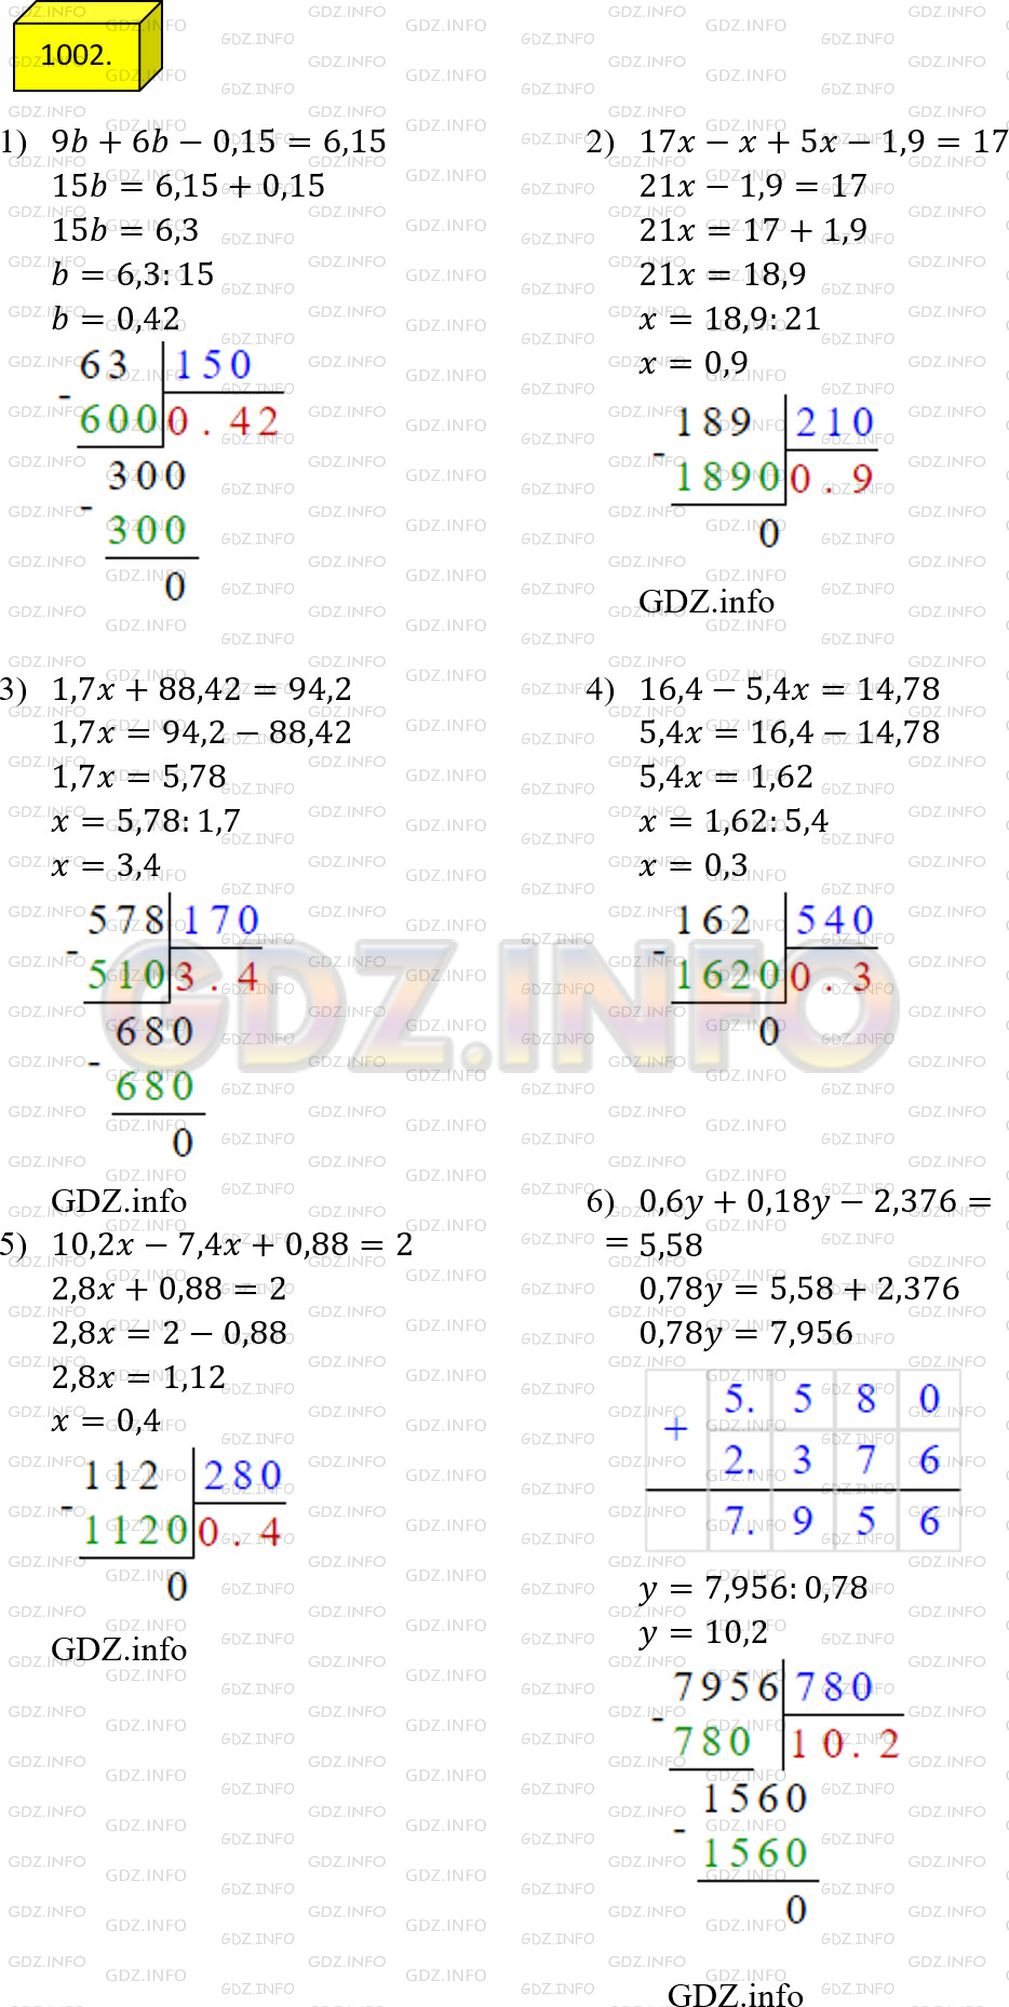 Фото решения 2: Номер №1002 из ГДЗ по Математике 5 класс: Мерзляк А.Г. г.